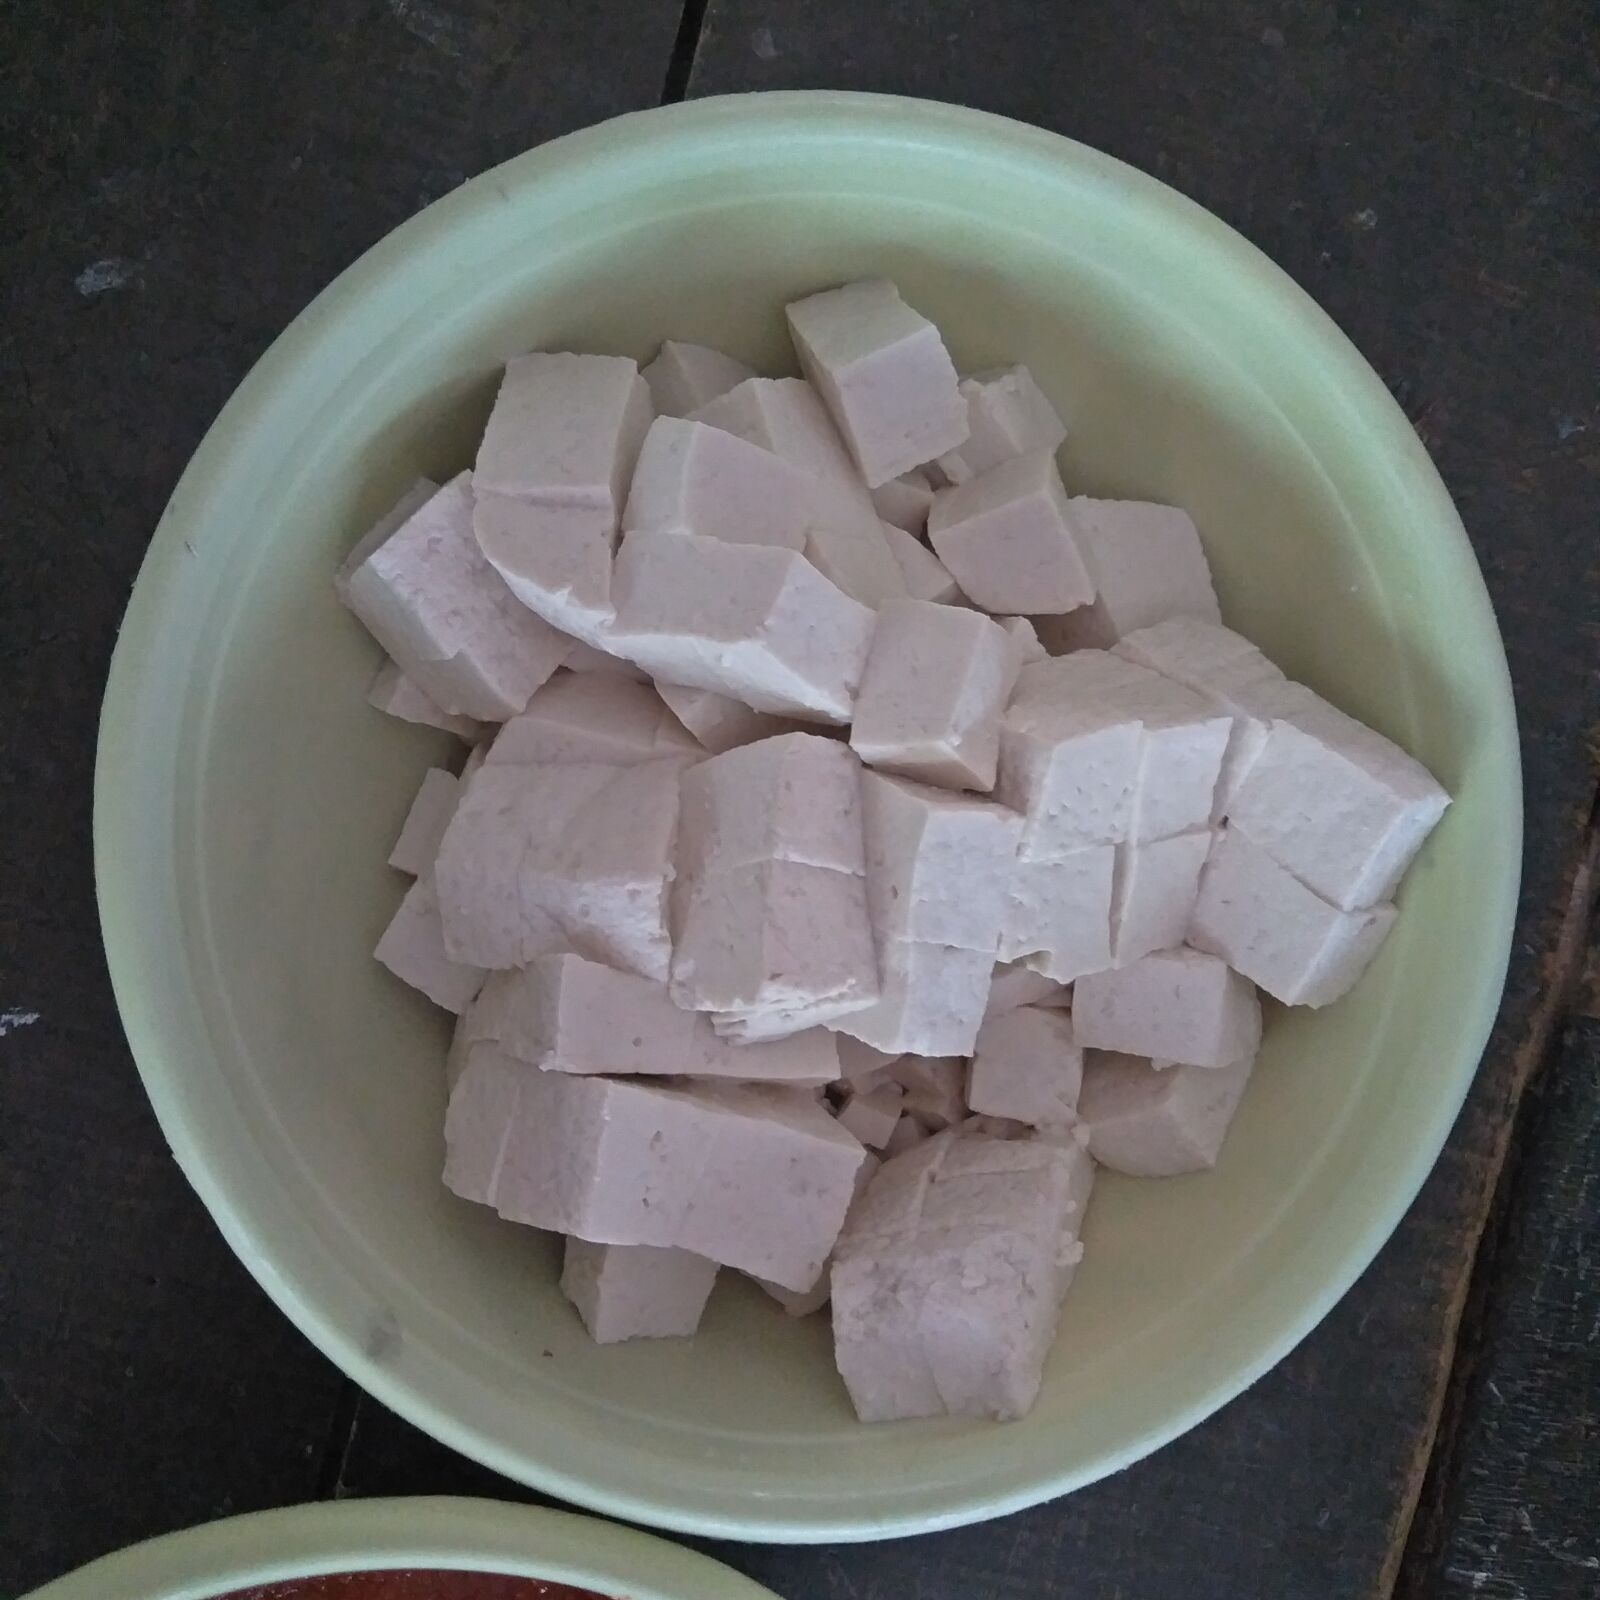 OPPO CPH1801 sample photo. Tofu, tahu, best tofu photography